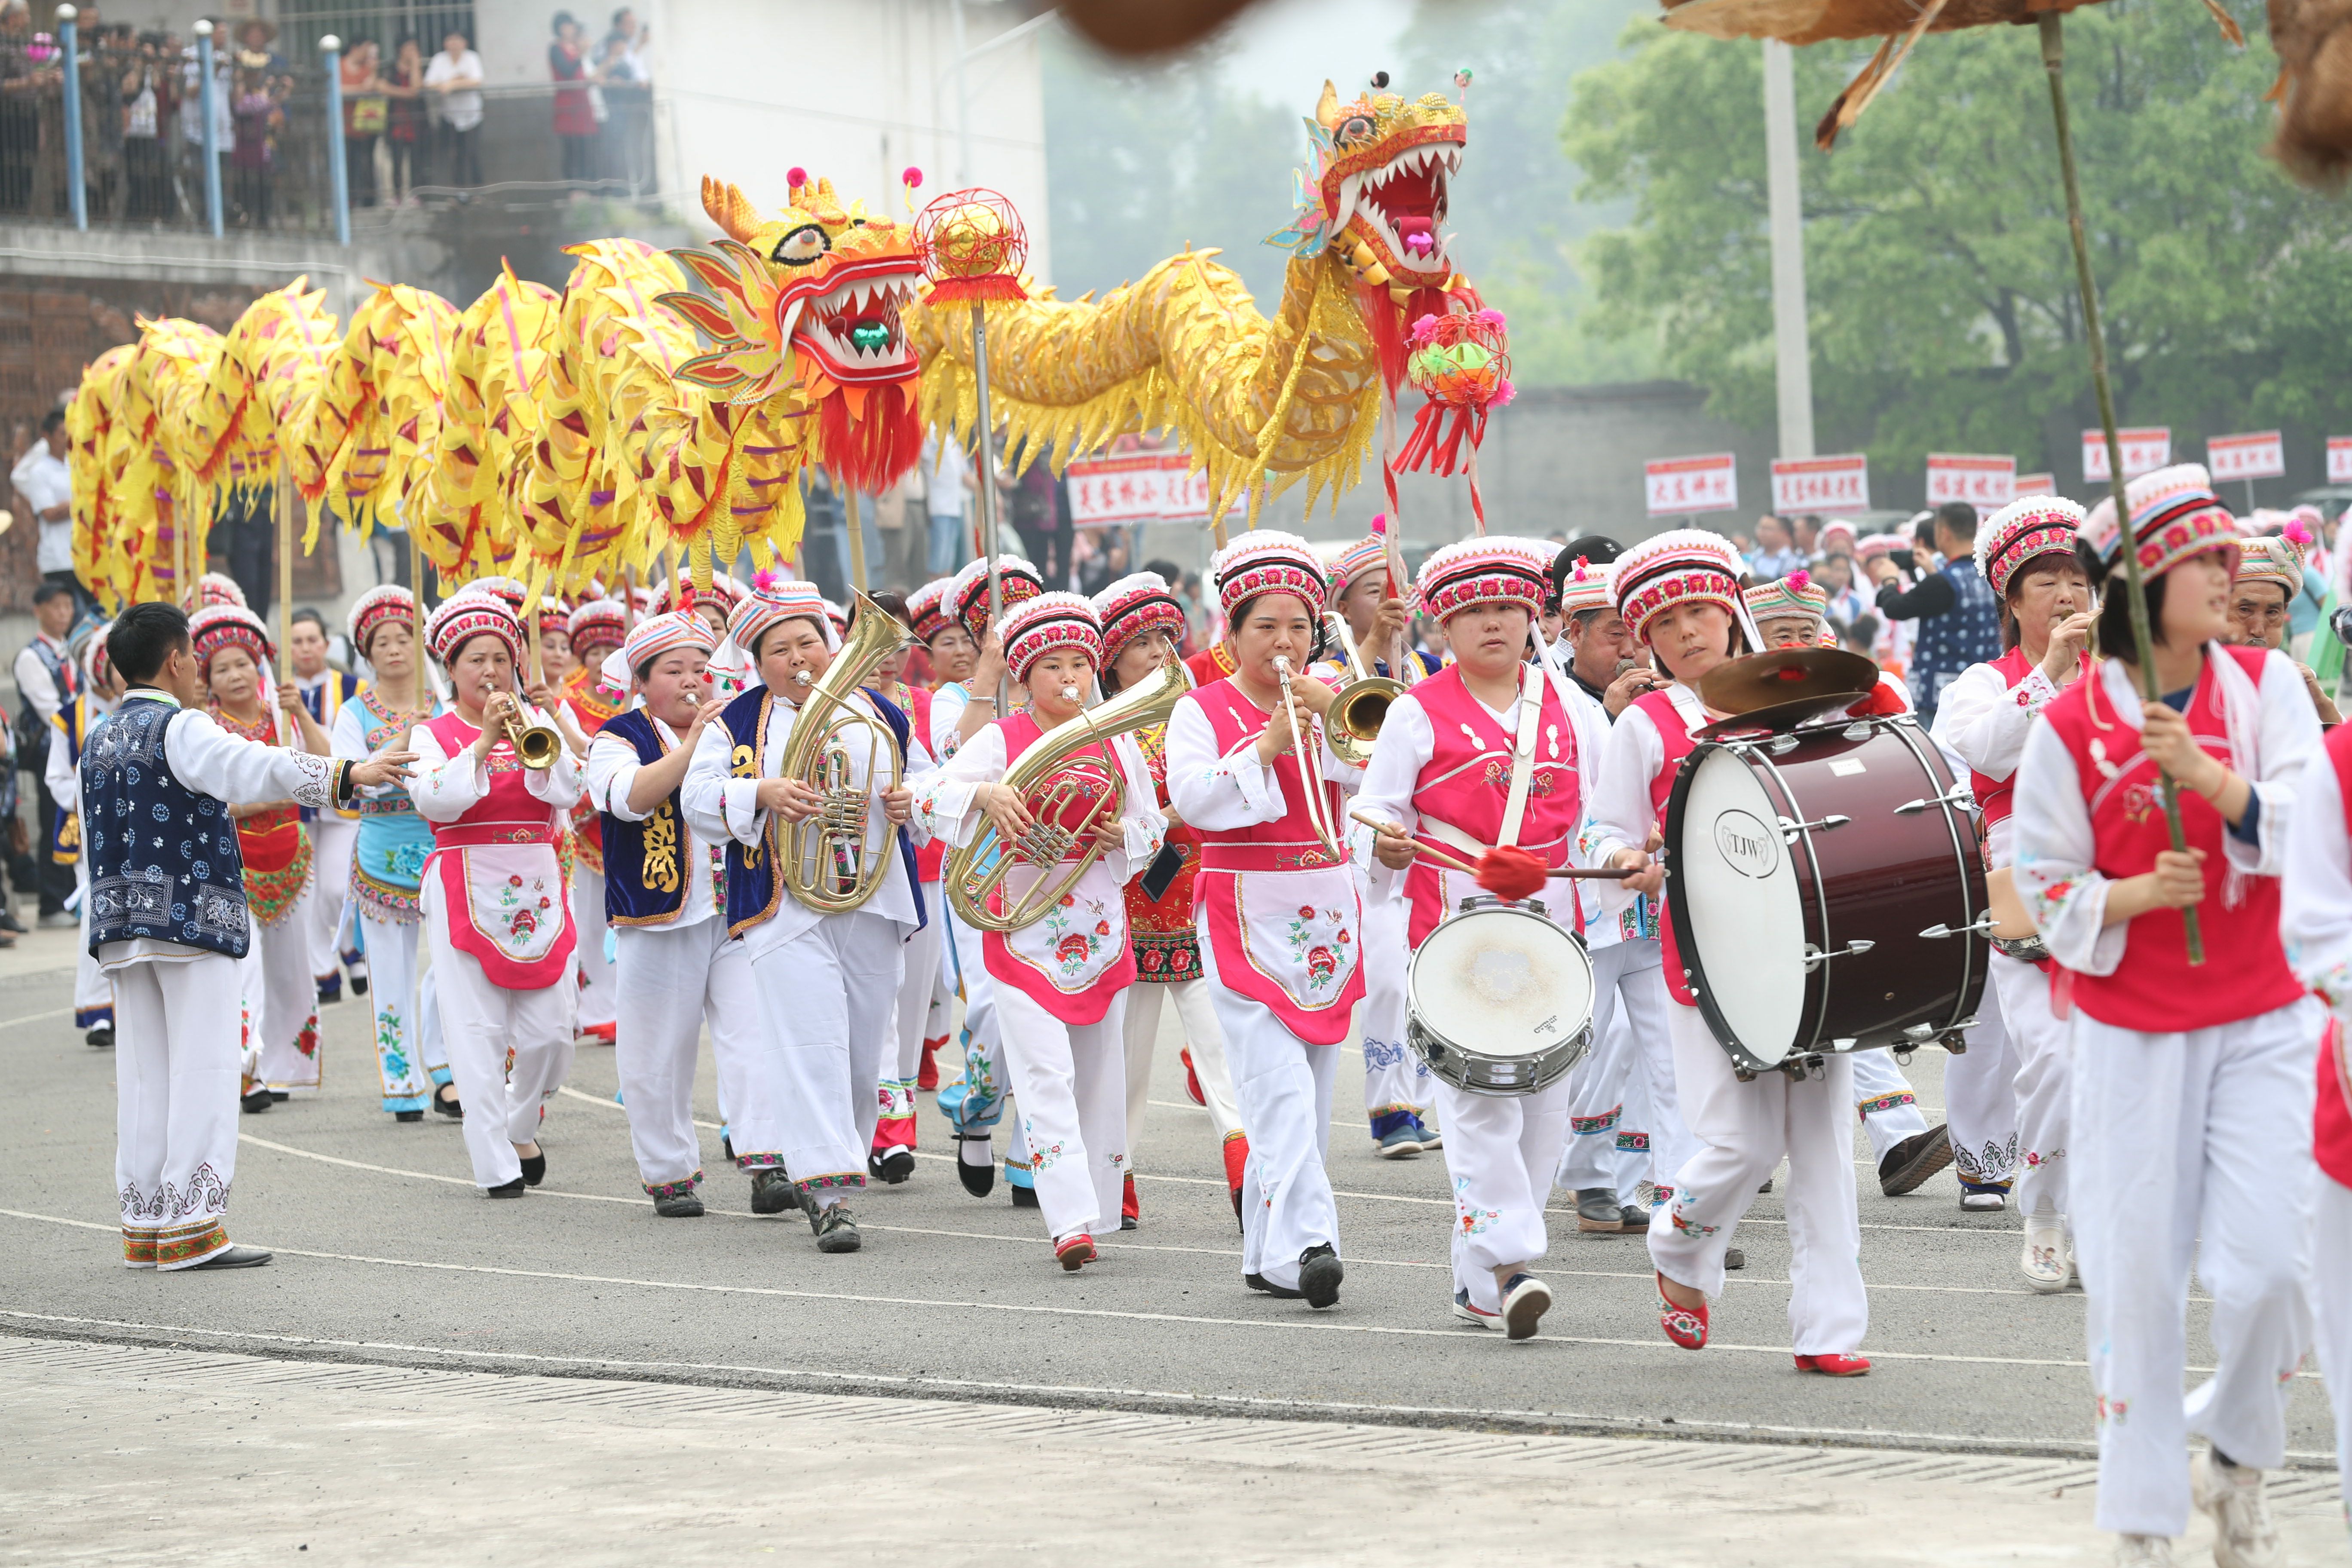 三月街"民俗活动举办七届以来,得到了全市13万白族同胞及云南大理白族